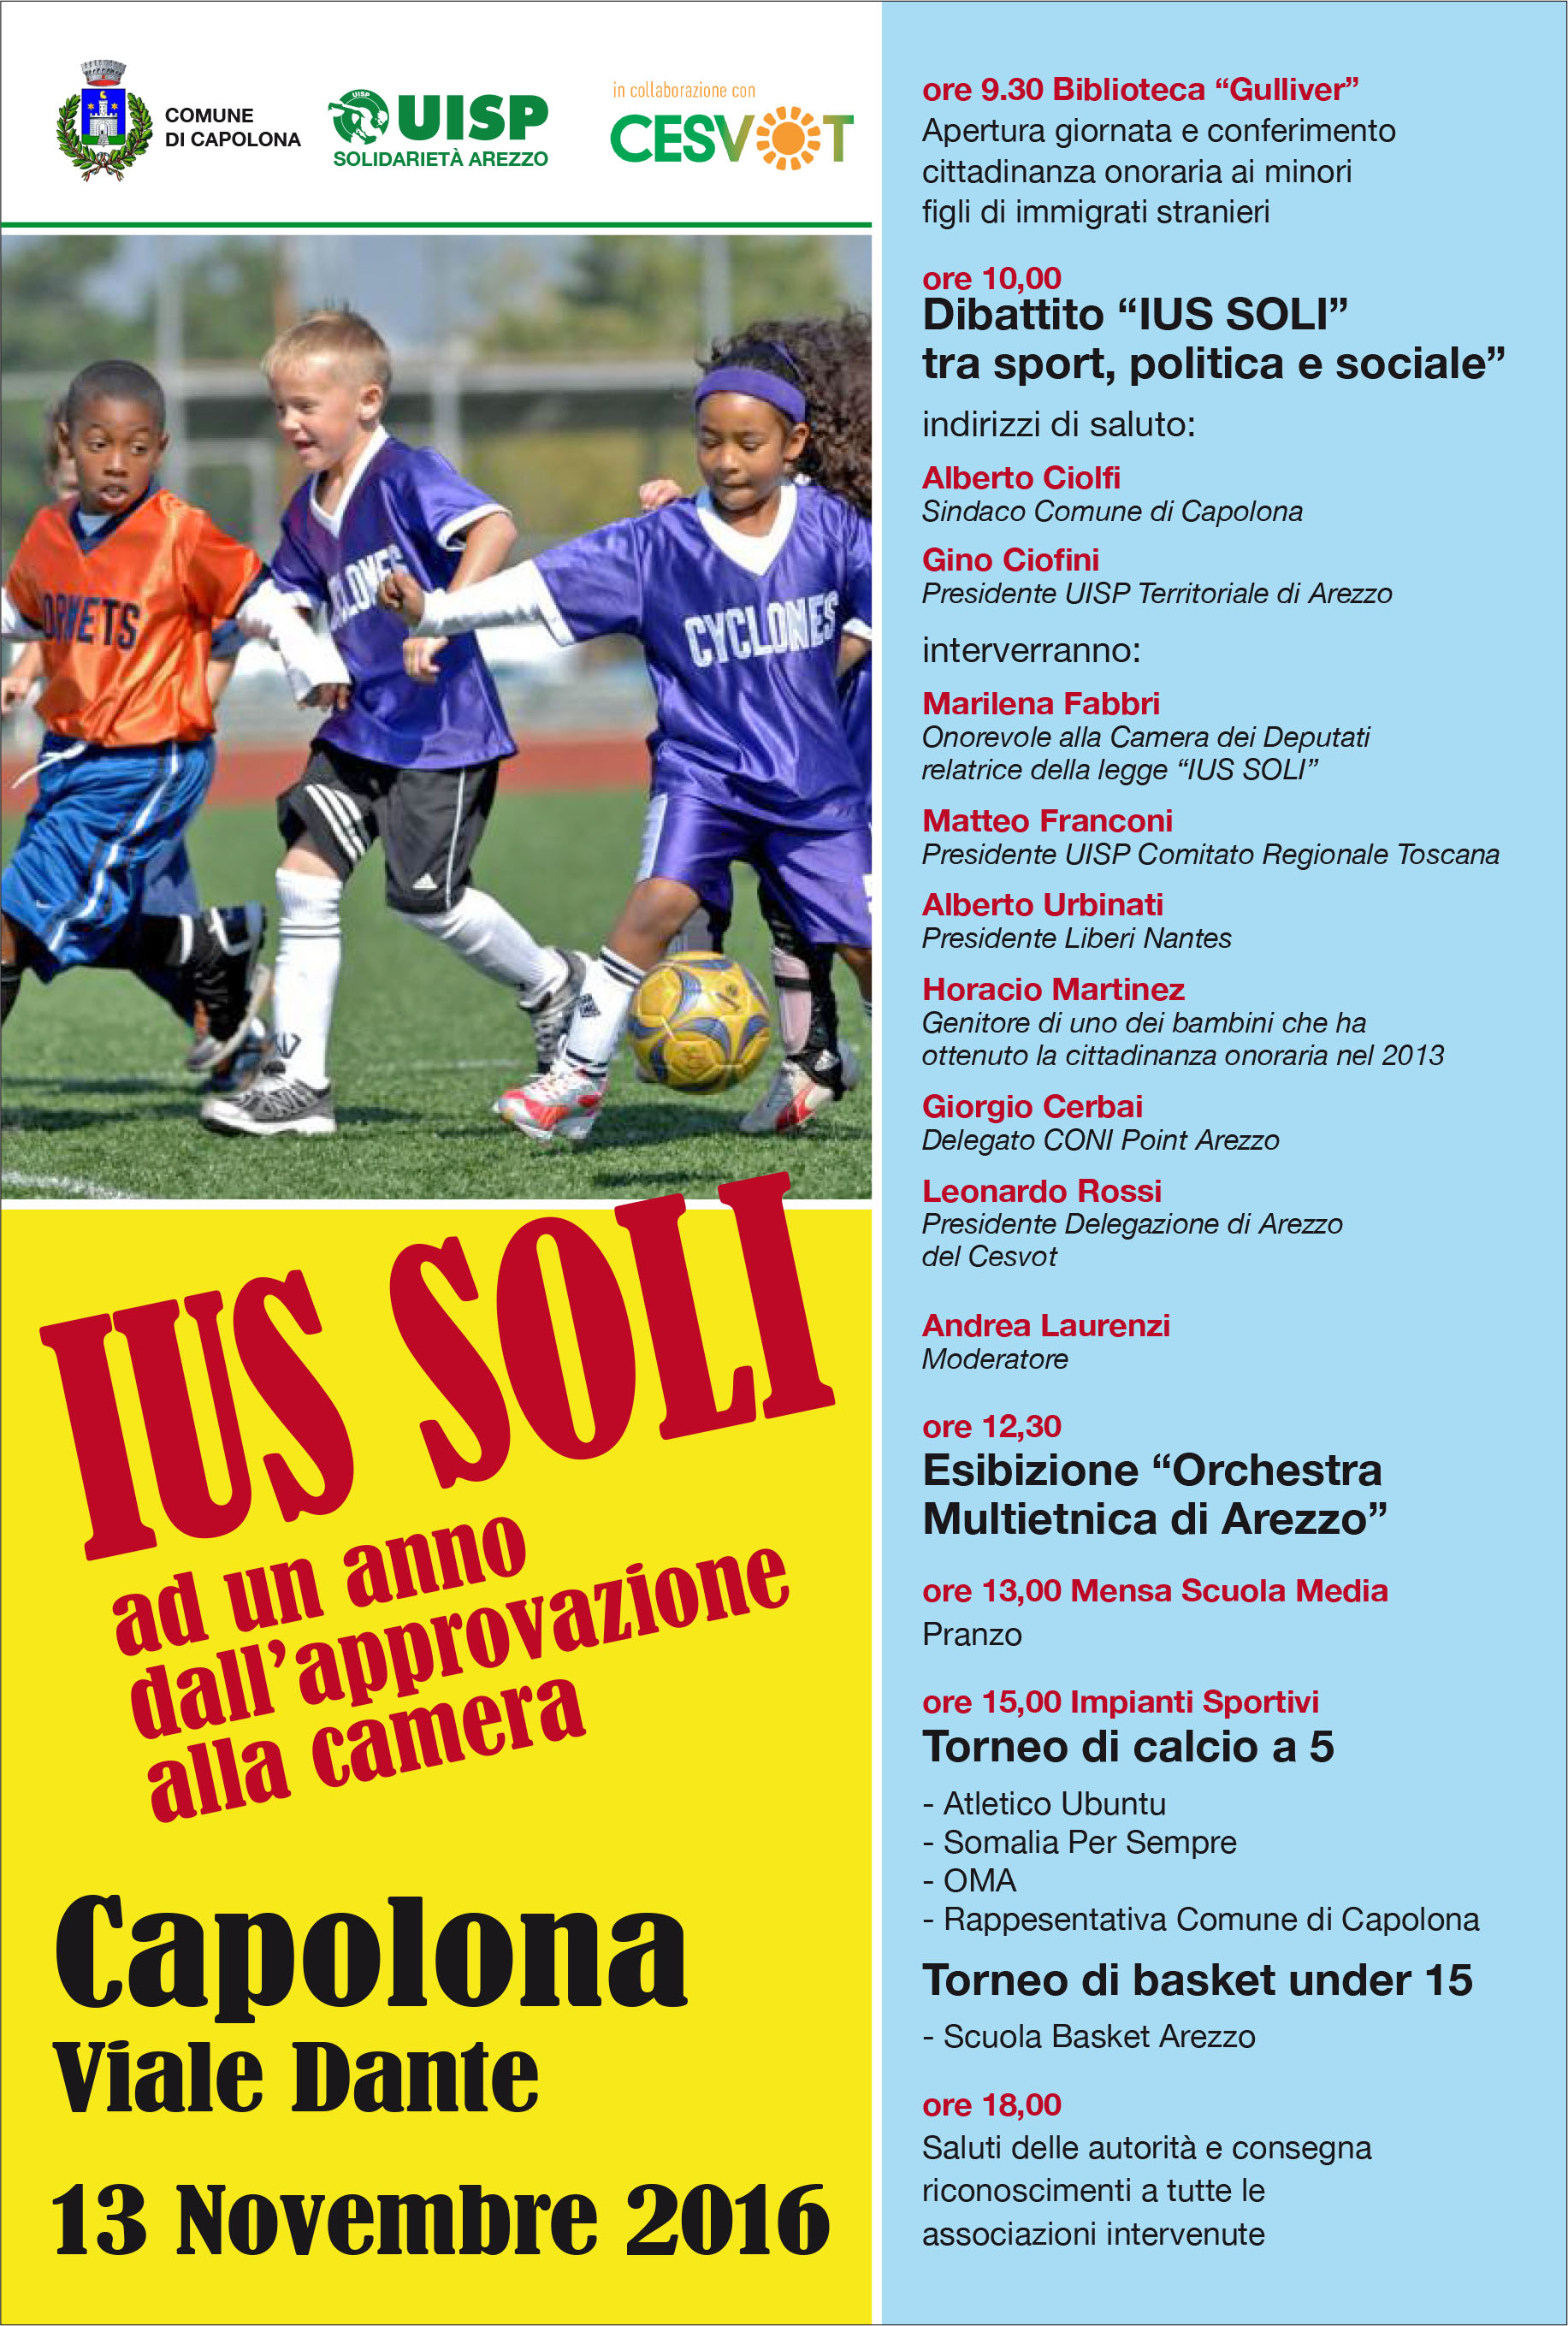 “IUS SOLI – ad un anno dall’approvazione alla Camera”  Domenica 13 novembre  Impianti sportivi V.le Dante – CAPOLONA